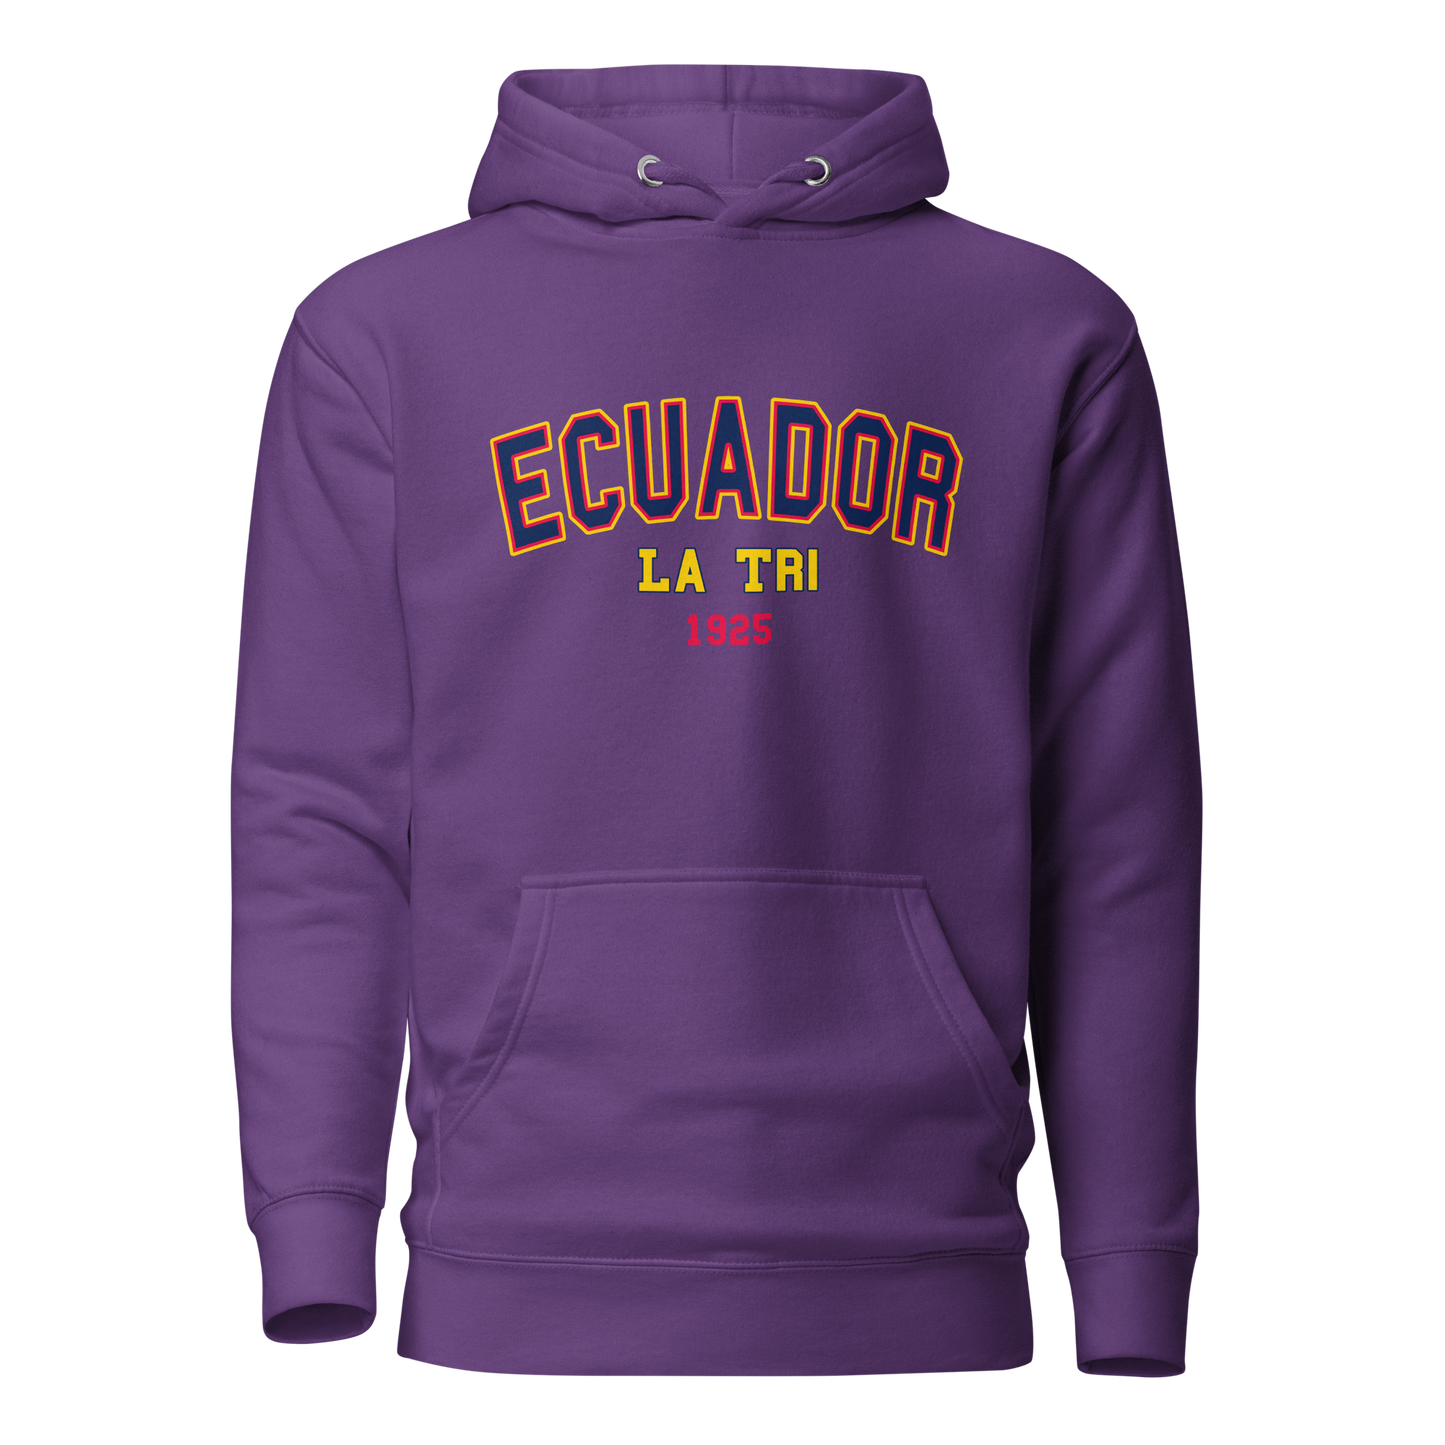 Sqdltd Ecuador WC Colegio Unisex Hoodie